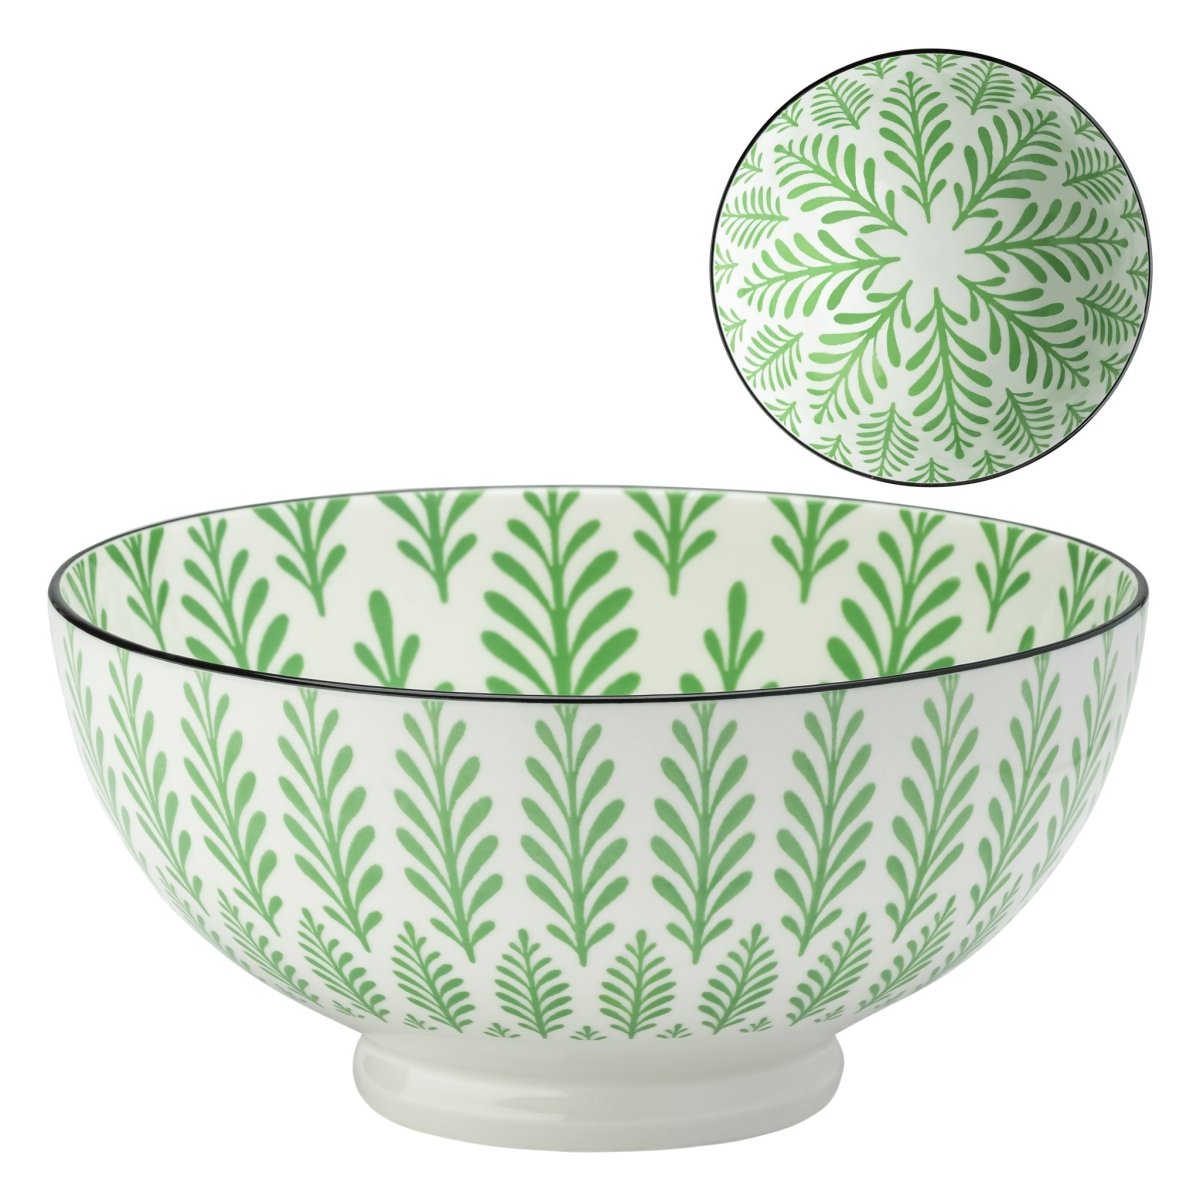 Green Cyprus kiri Porcelain 8 inch Diameter Bowl - Rustic Furniture Outlet